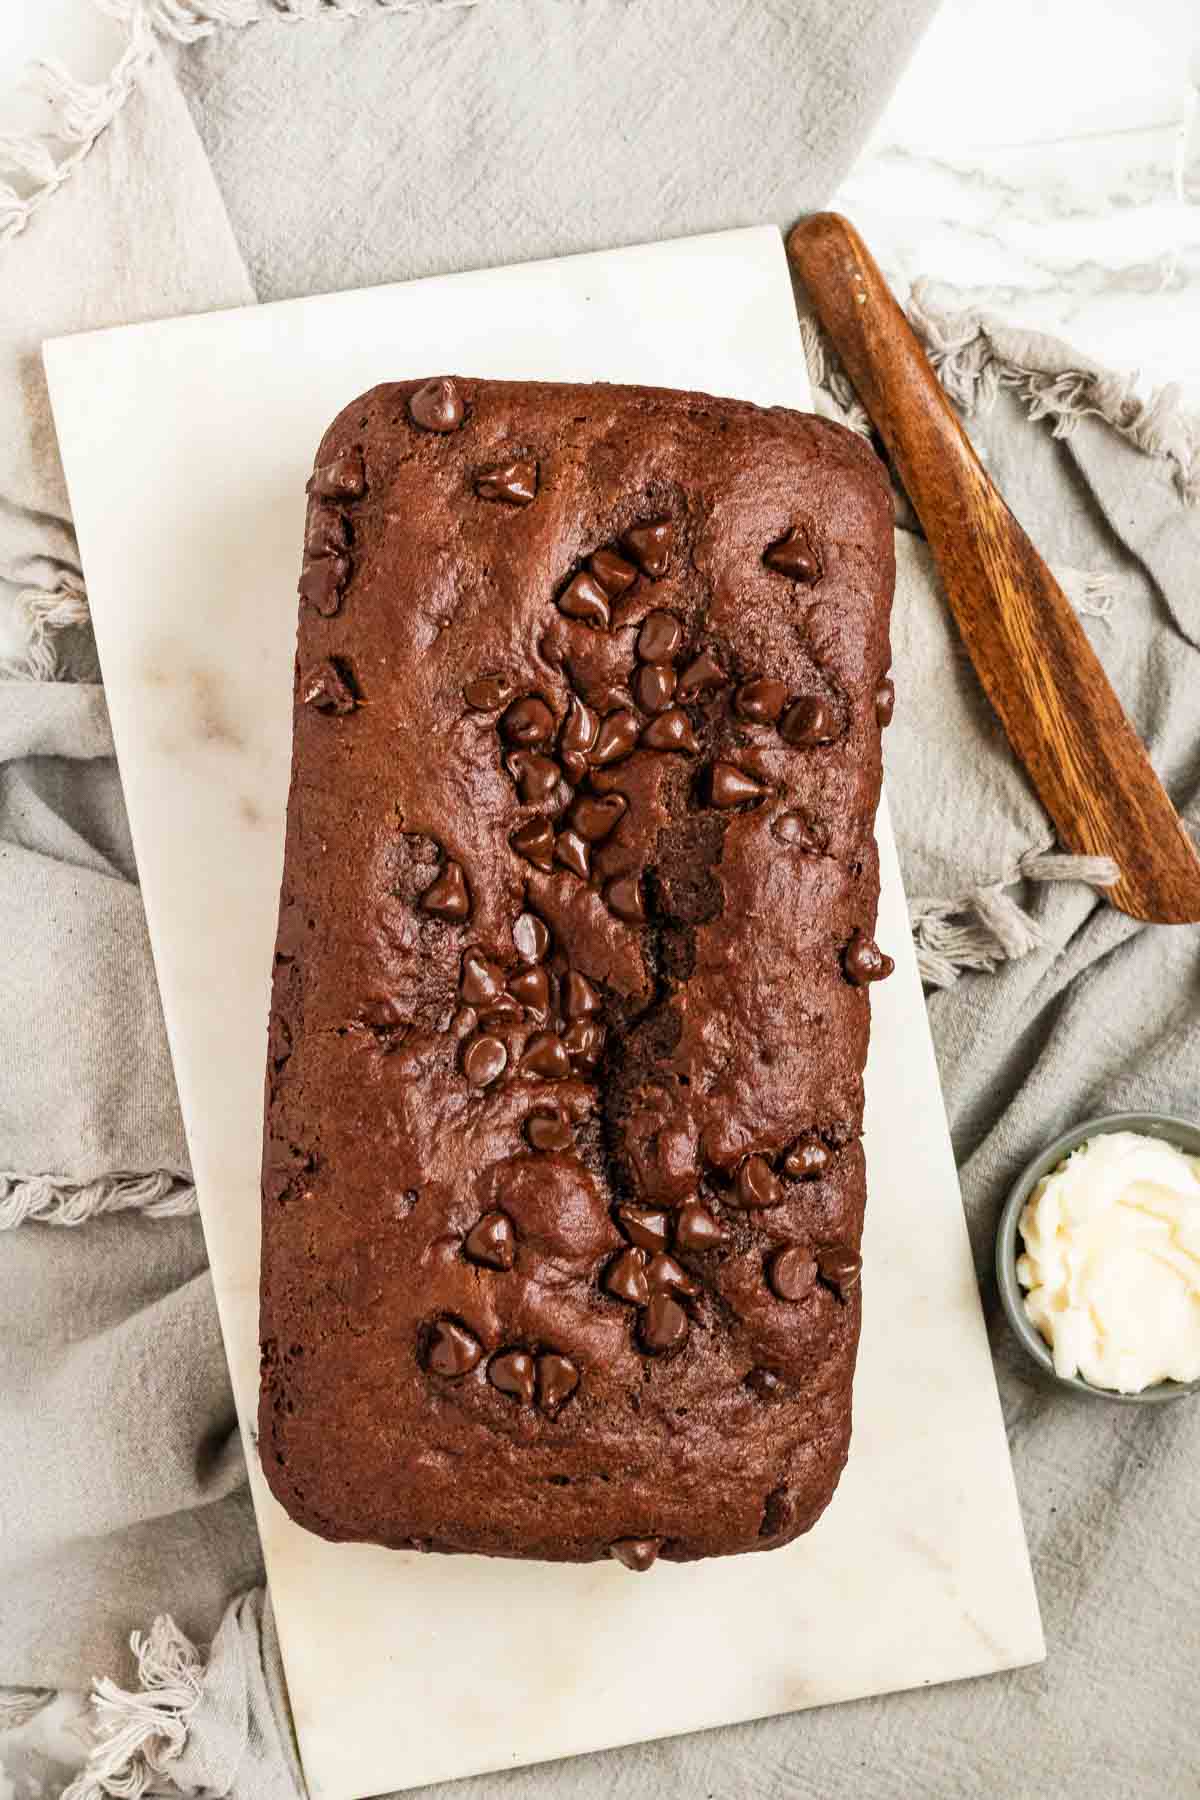 A whole chocolate loaf cake.